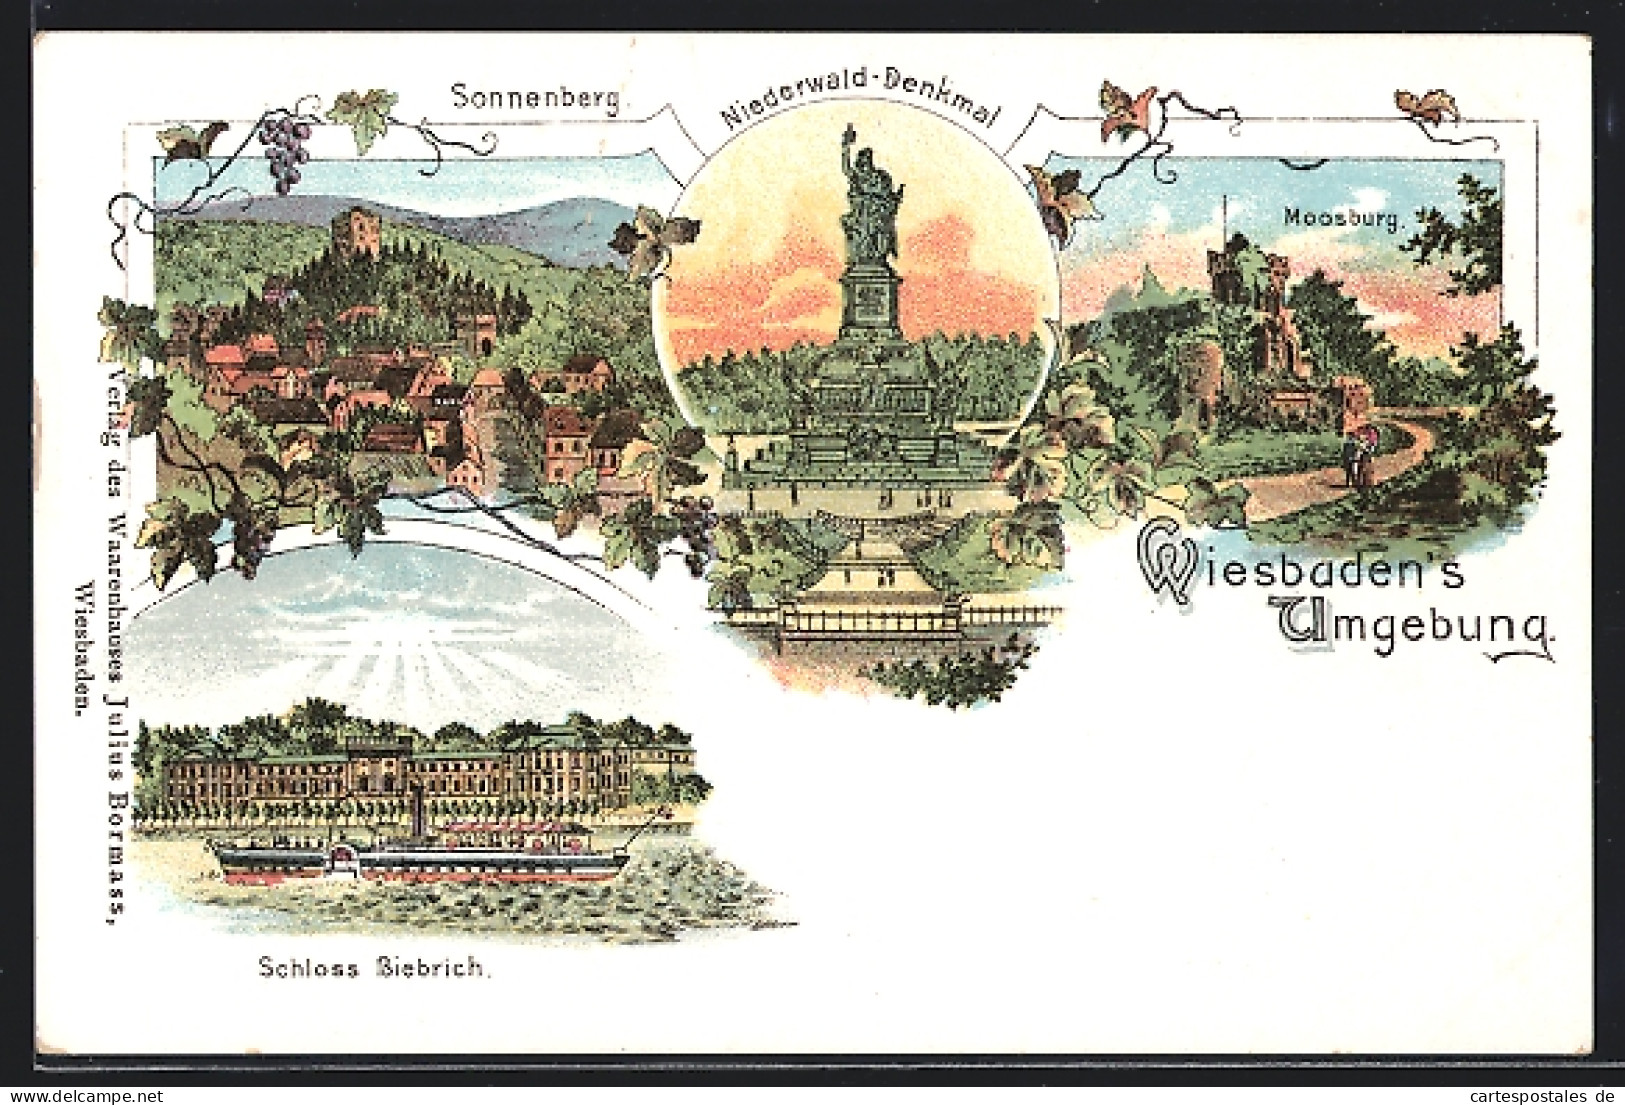 Lithographie Wiesbaden, Sonnenberg, Niederwald-Denkmal, Moosburg, Schloss Biebrich  - Wiesbaden